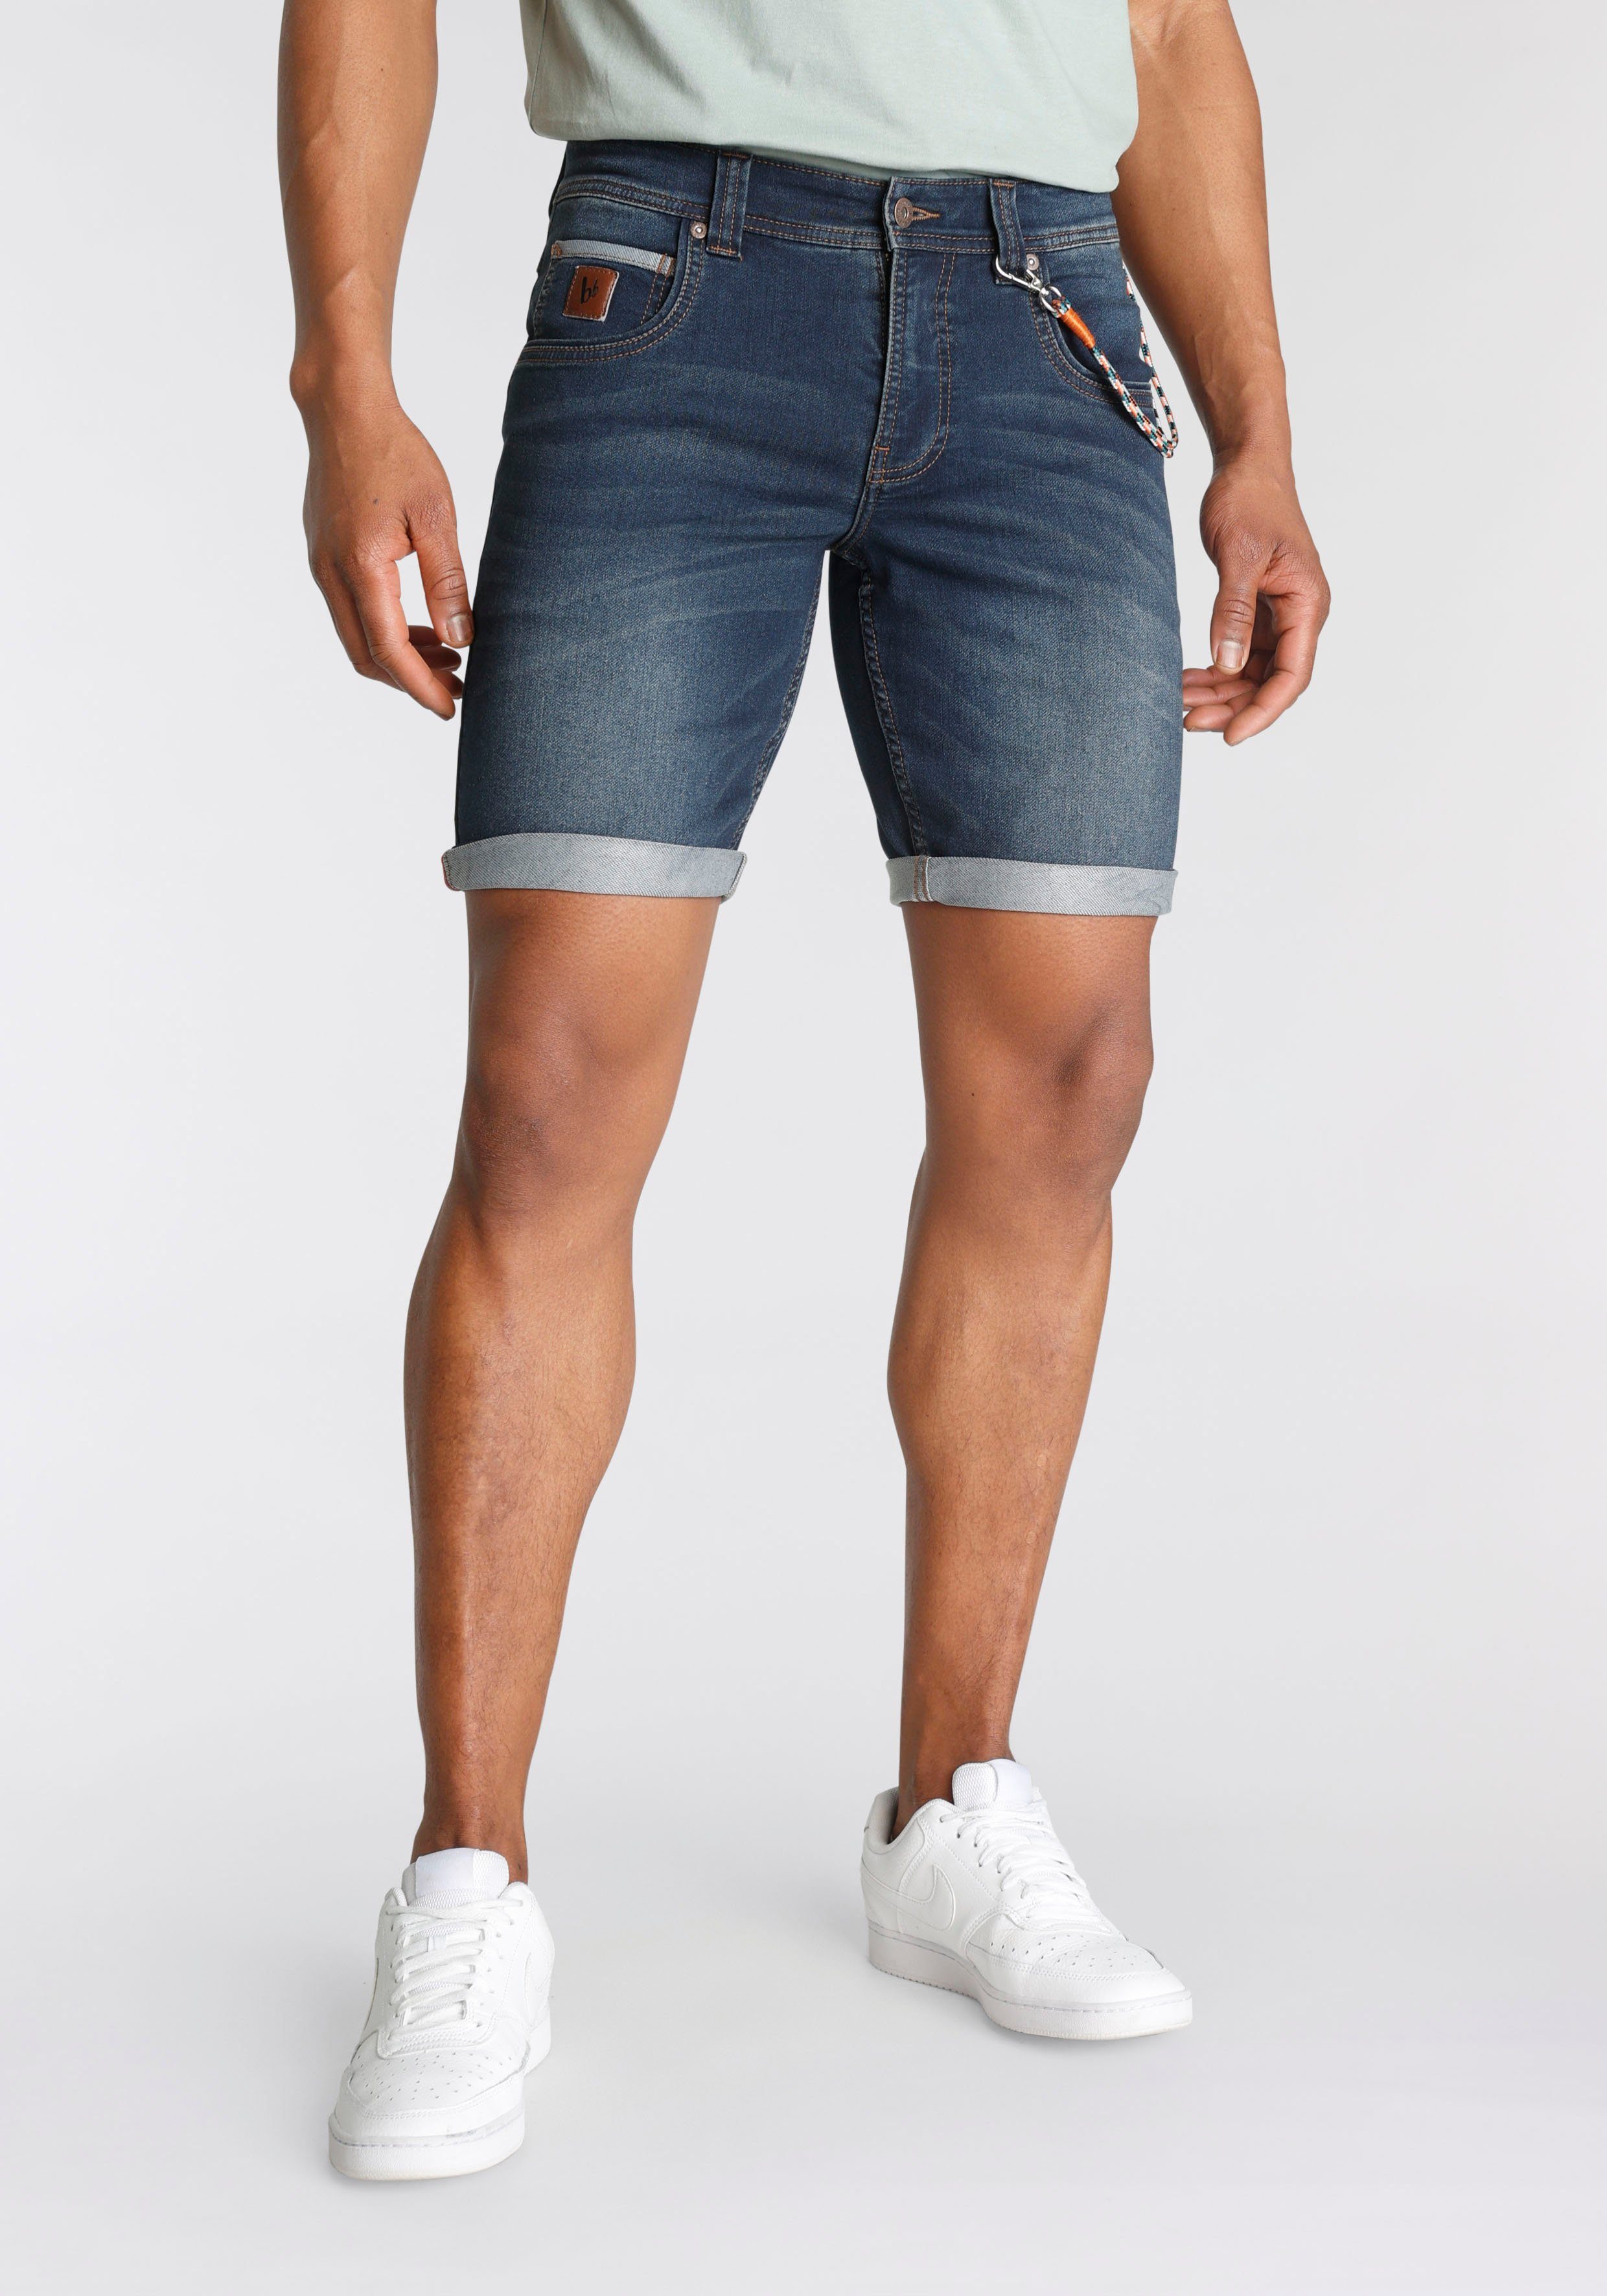 Jeans Shorts Herren in großen Größen online kaufen | OTTO